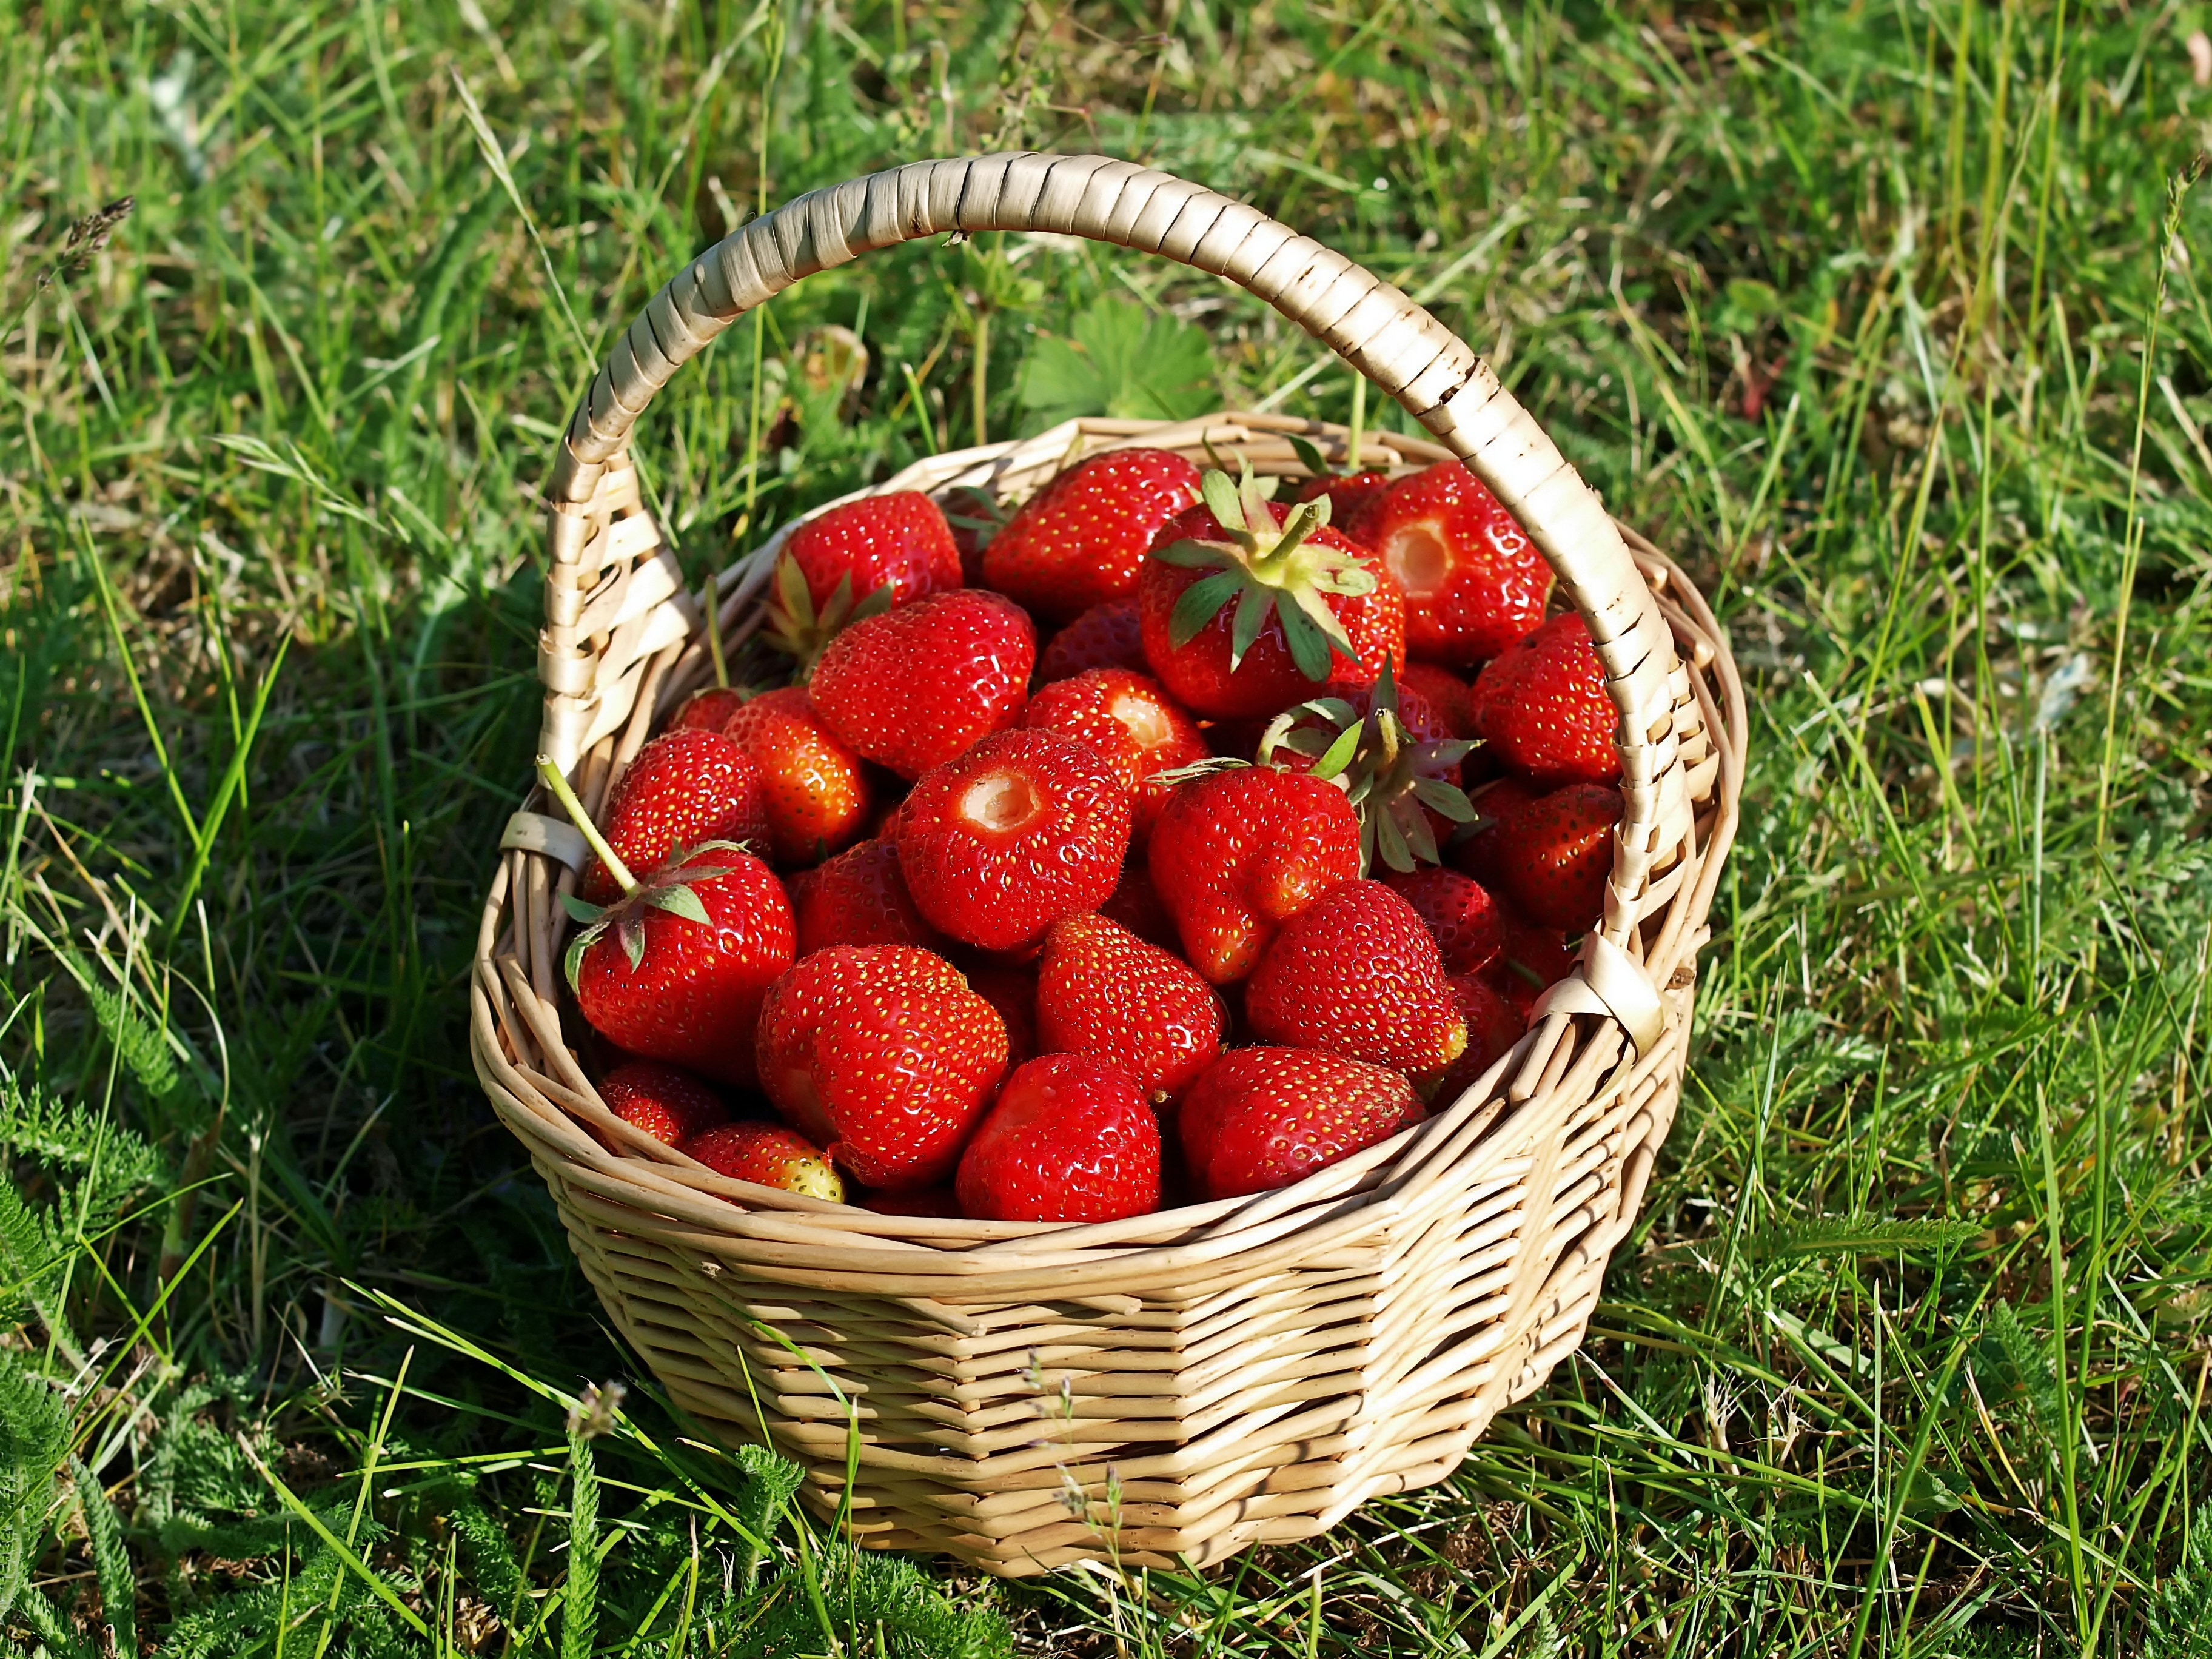 strawberries in brown wicker basket